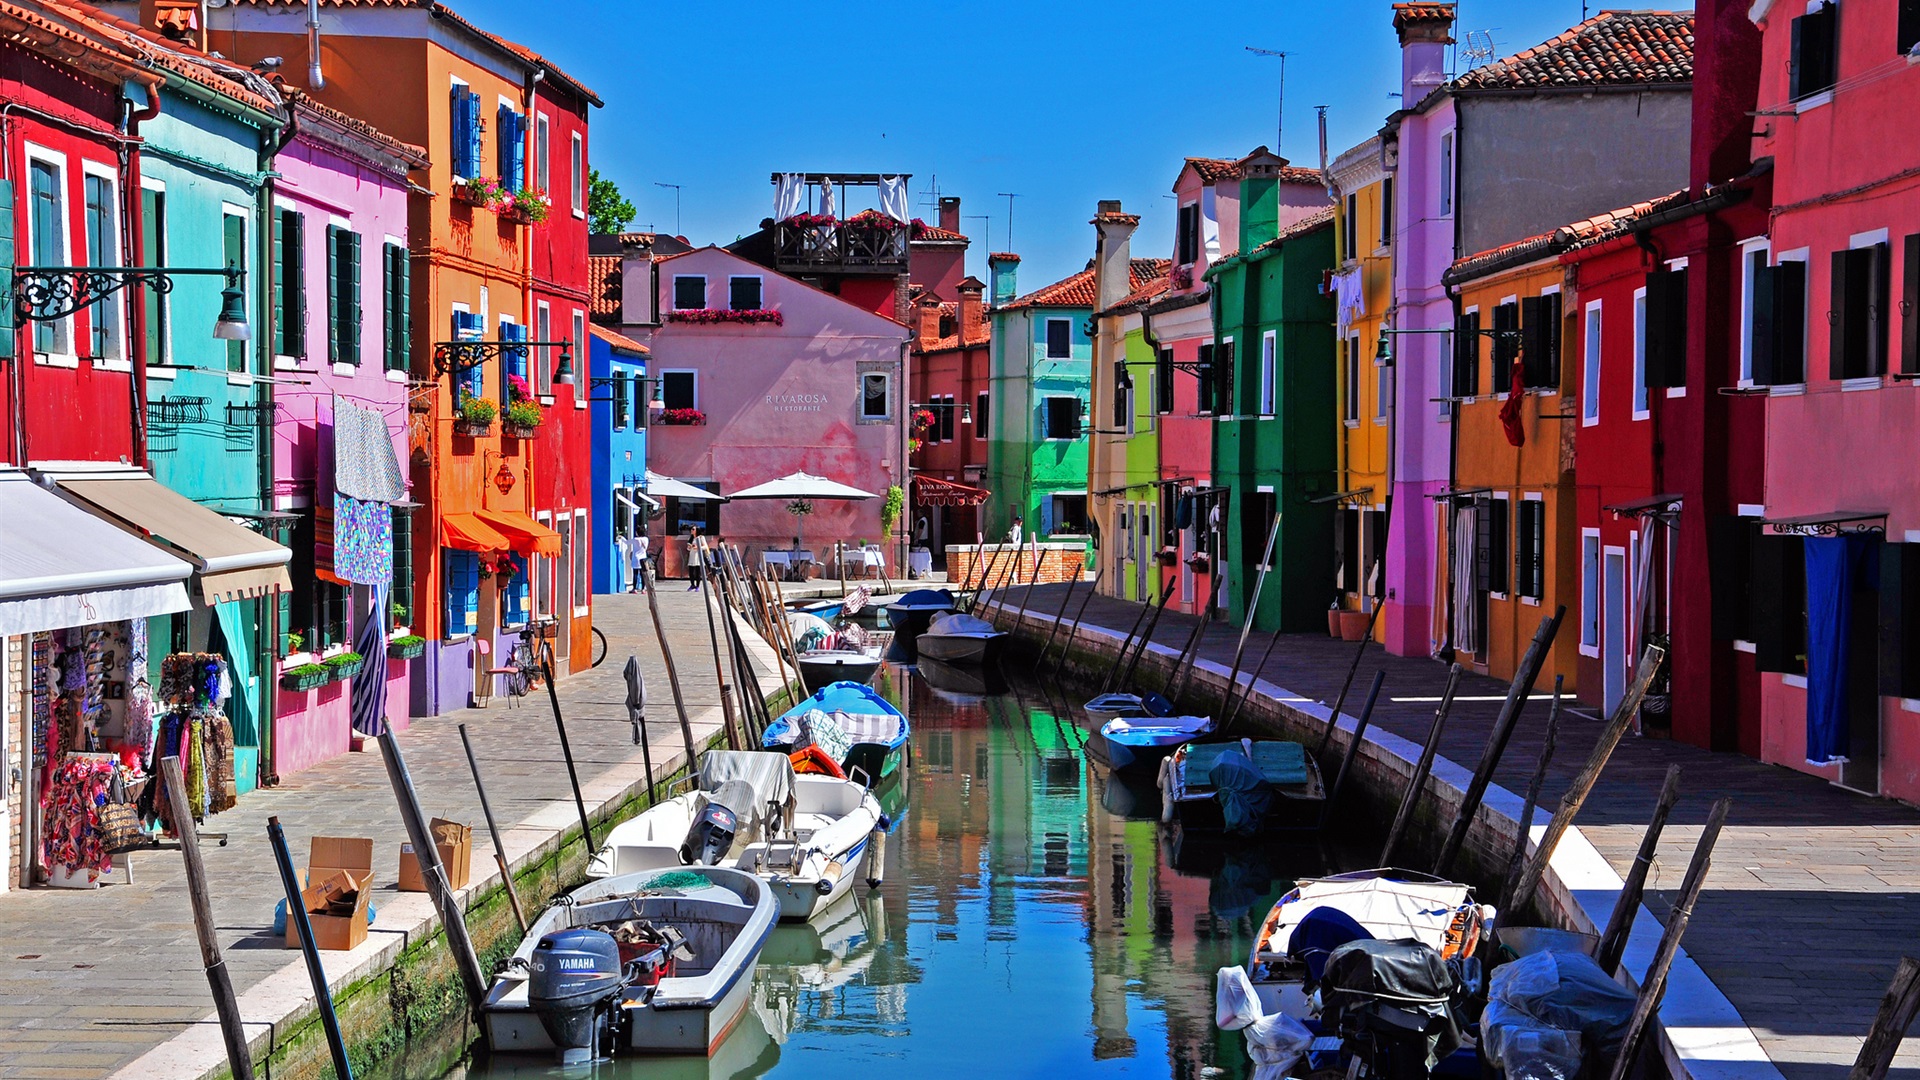 Italy-Venice-Burano-island-boats-river_1920x1080.jpg